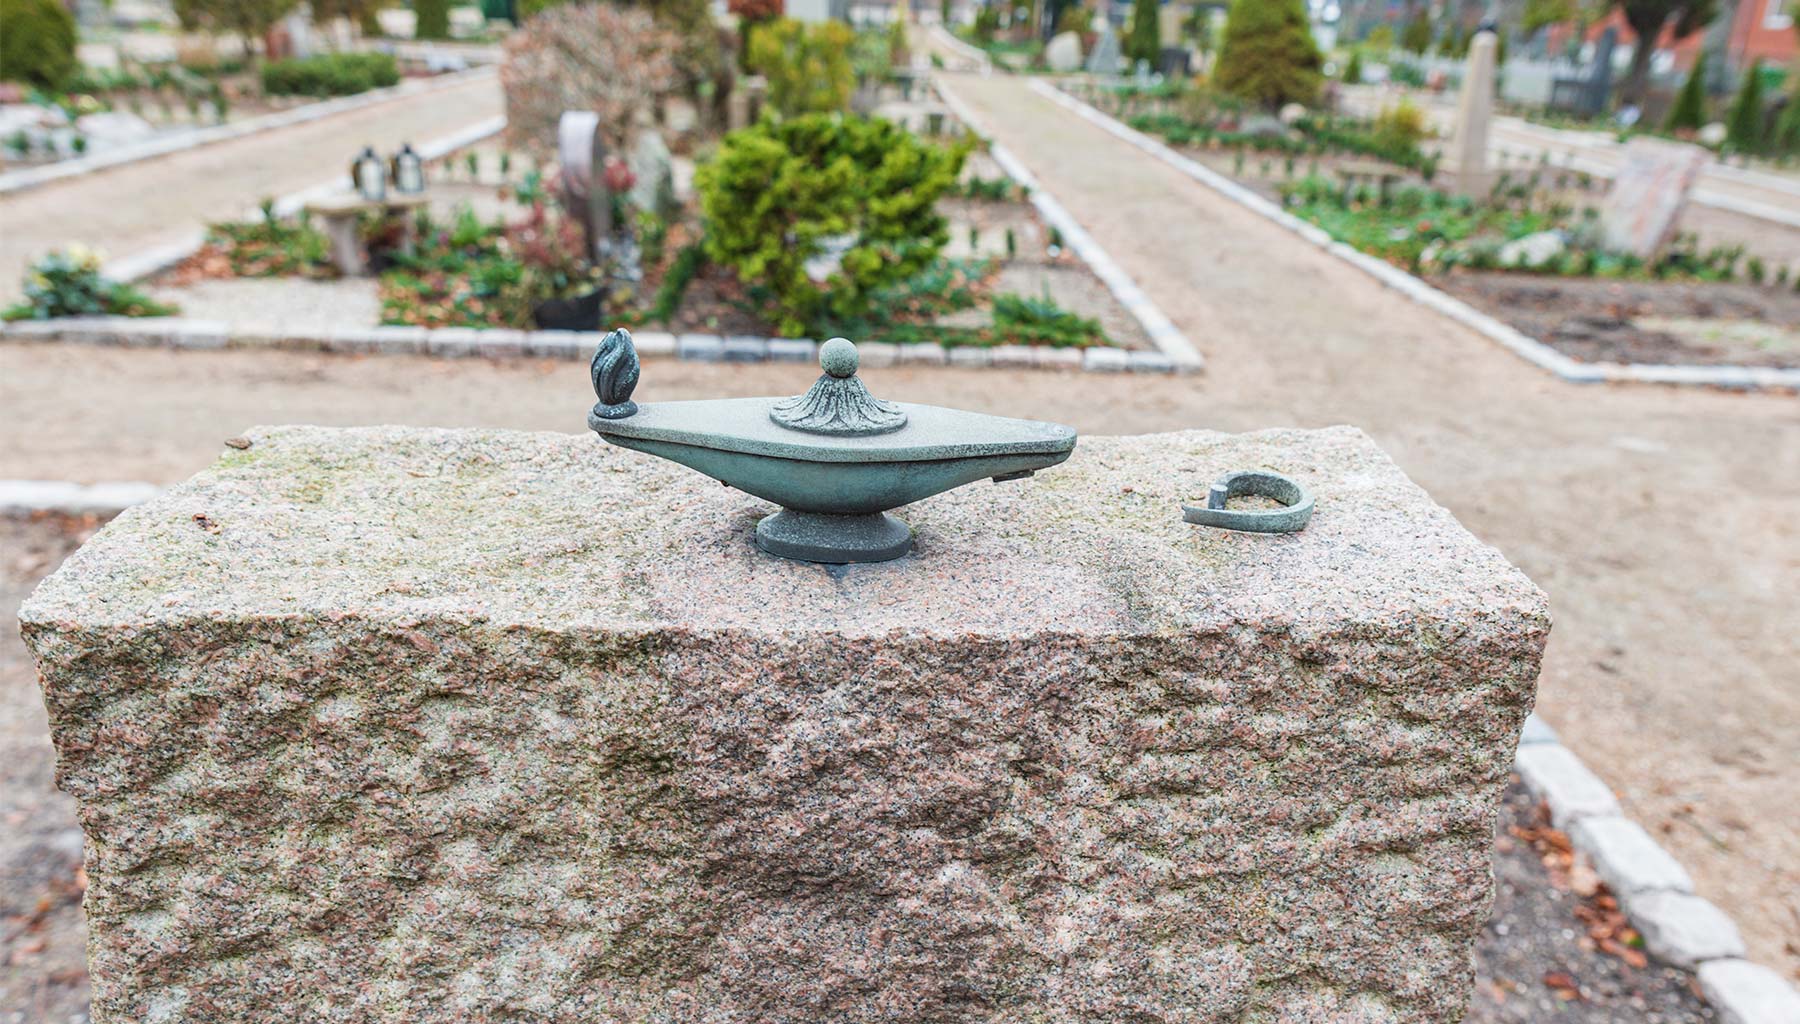 Udsmykninger på gravsteder er ofte udsat for hærværk eller tyveri, hvor figurer og som her aladdin-lamper brækkes eller sparkes af. Foto: HAS.